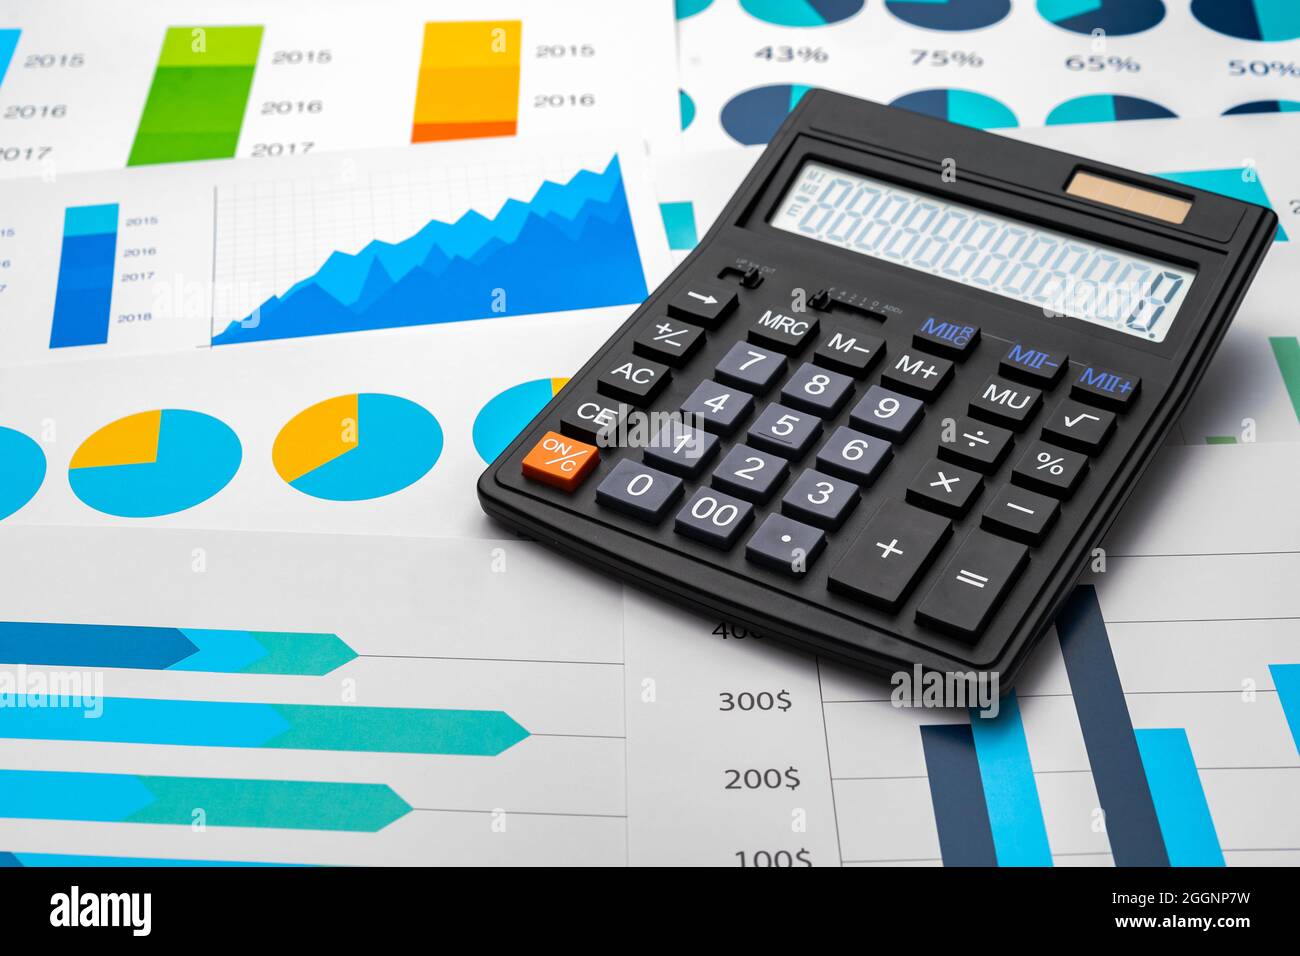 Graphique d'entreprise et calculatrice sur table Banque D'Images